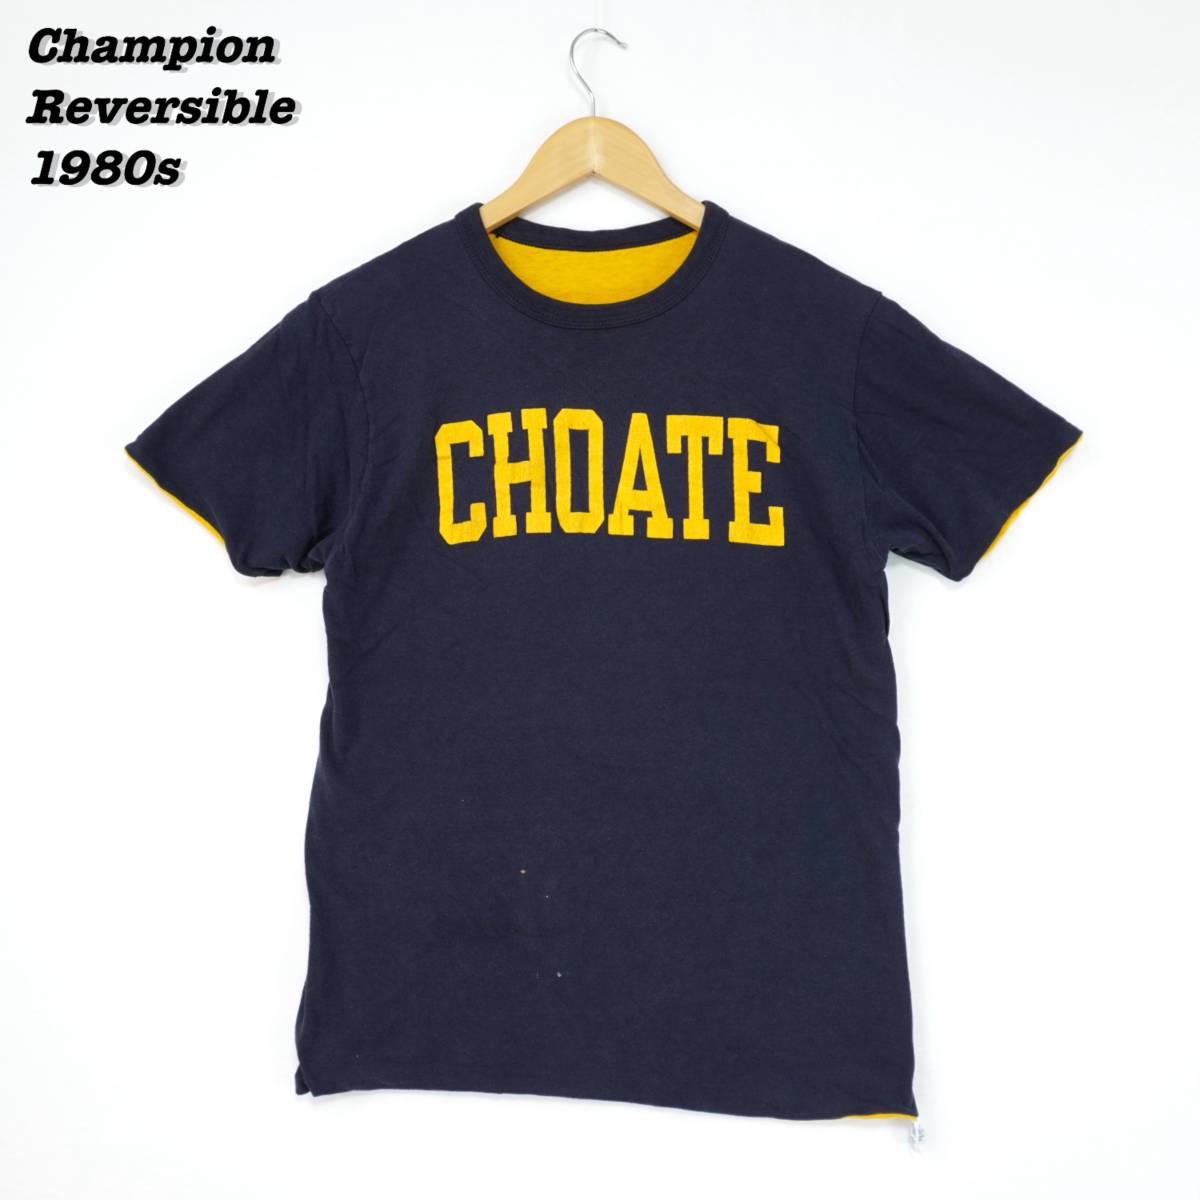 Champion Reversible T-Shirts 1980s LARGE T205 Vintage チャンピオン リバーシブル Tシャツ 1980年代 ヴィンテージ トリコロールタグ_画像1